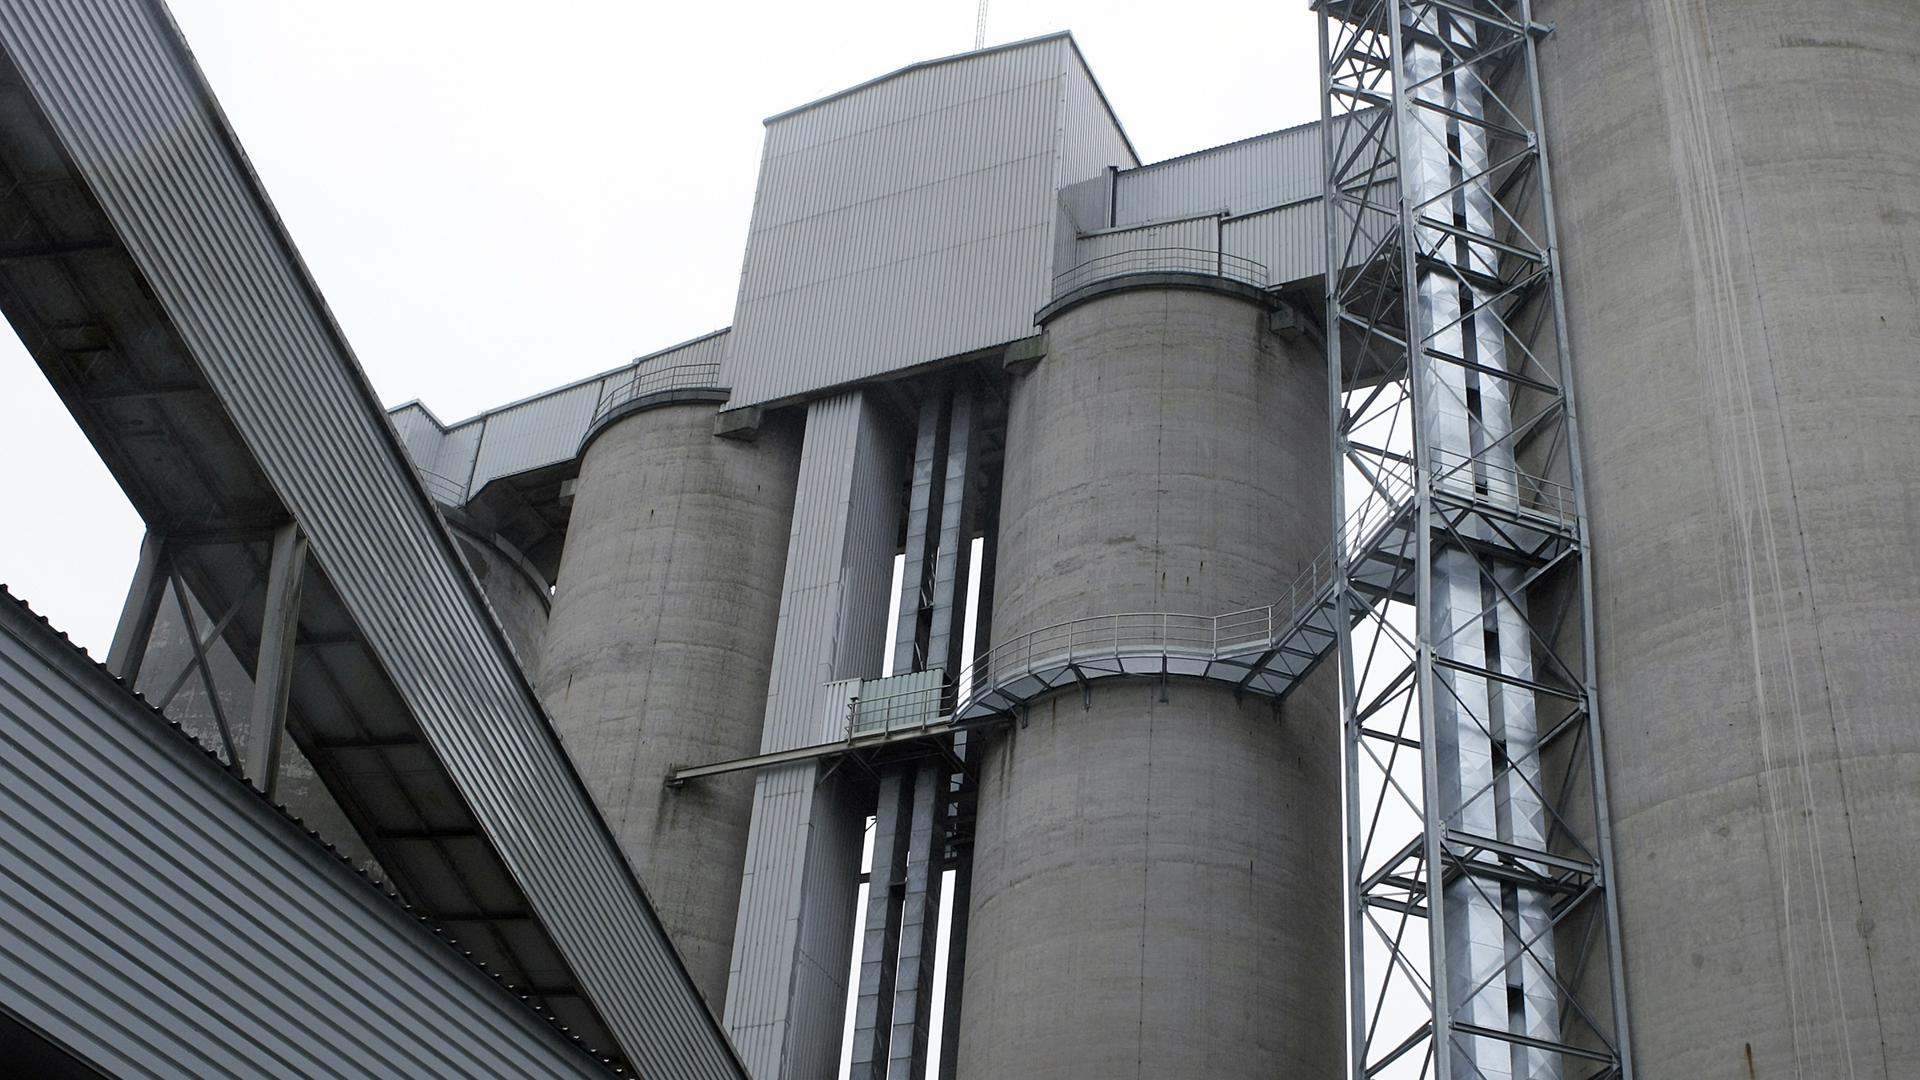 Cimalux est née en 2007 de la fusion de Ciments luxembourgeois et Matériaux. Le ciment est produit à Esch/Alzette depuis 1912: la production est très gourmande en énergie.